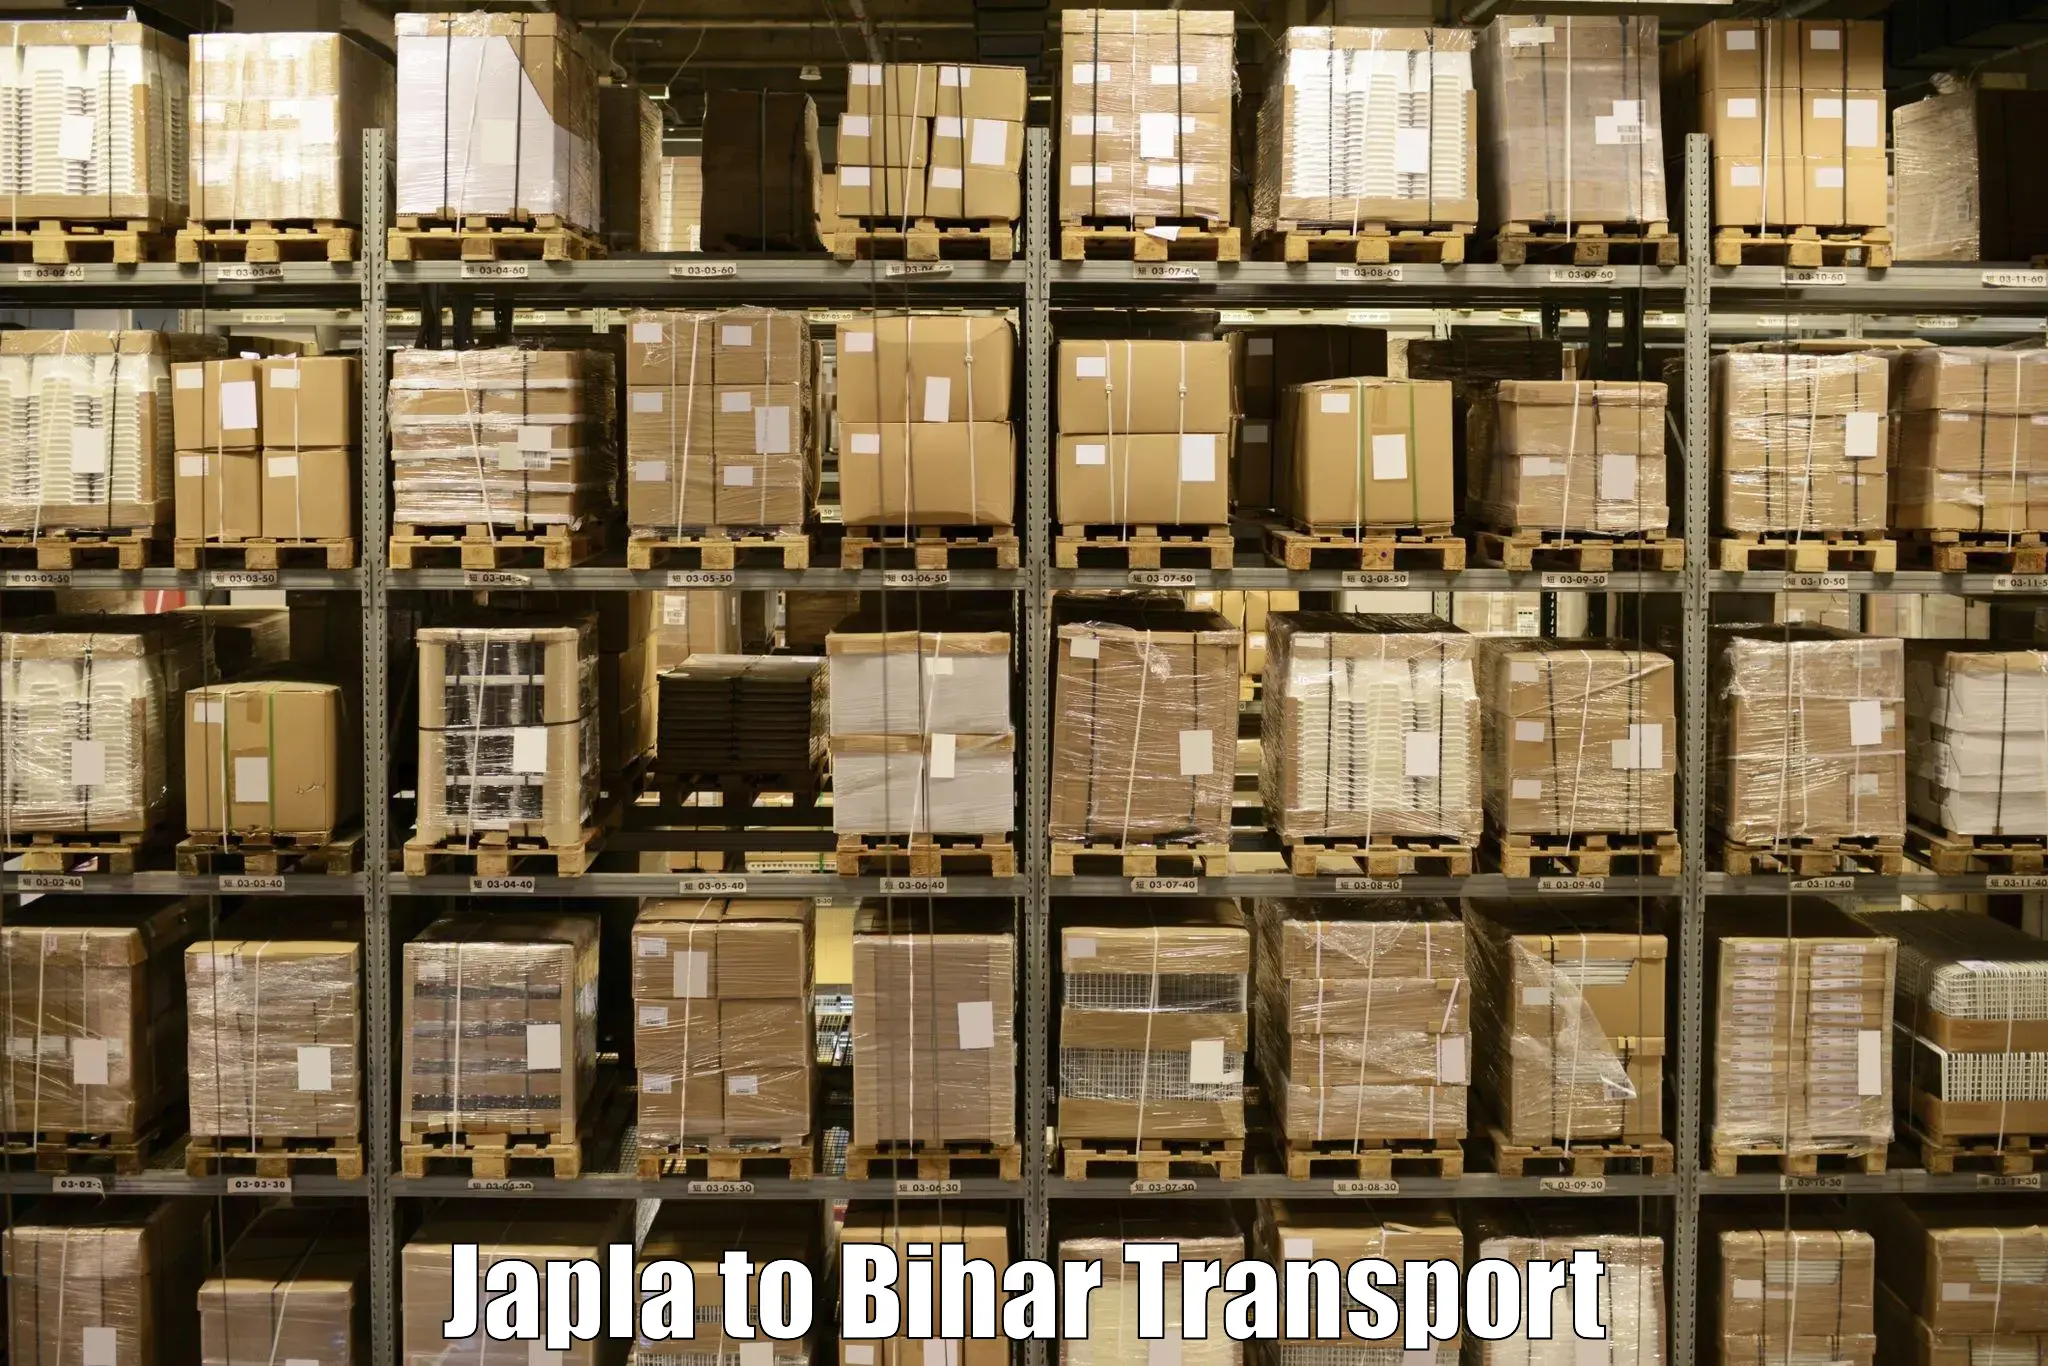 Nearby transport service Japla to Kursela